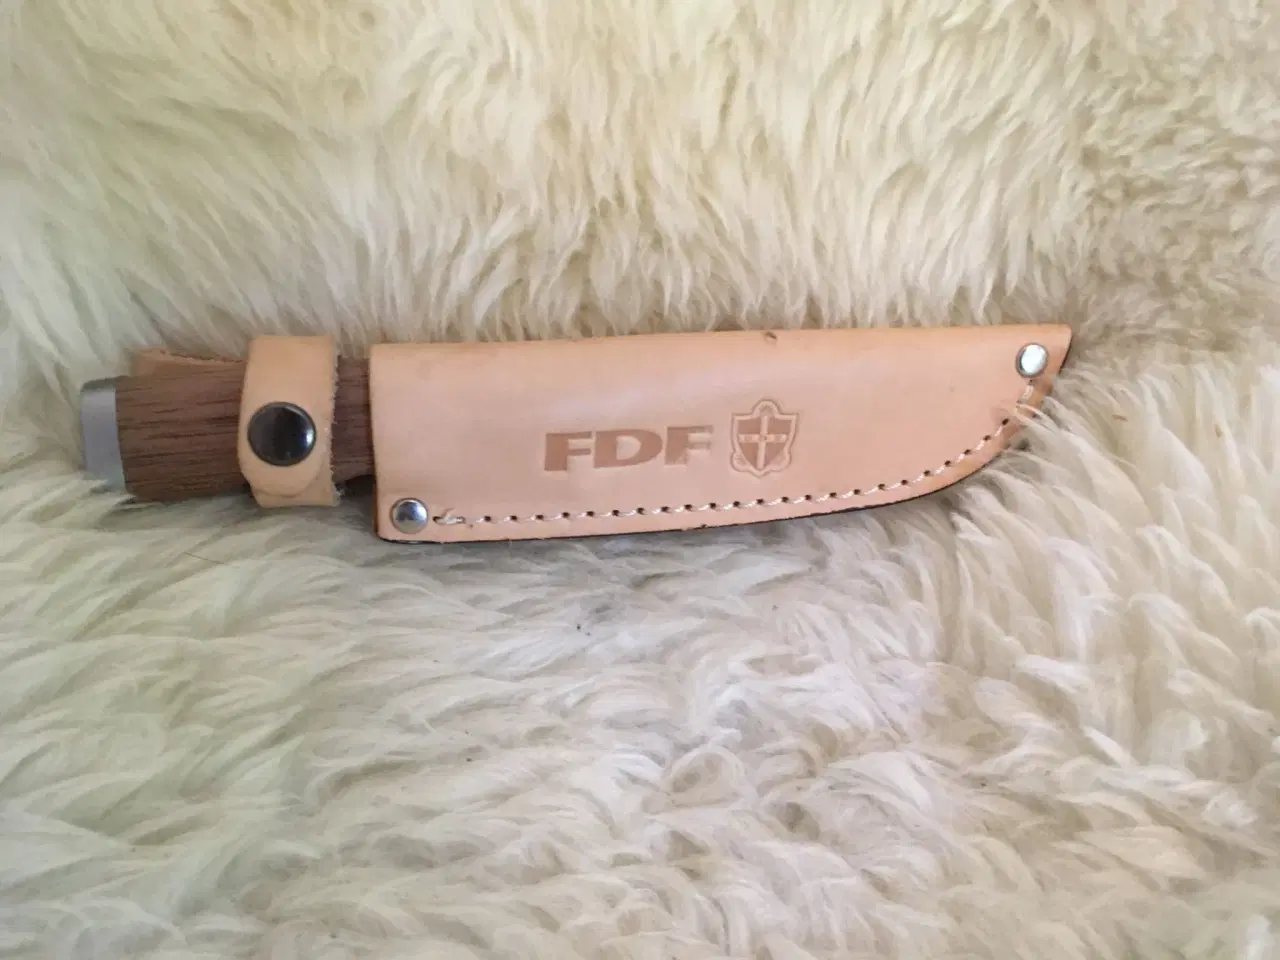 Billede 1 - FDF junior kniv brugt 1 gang.